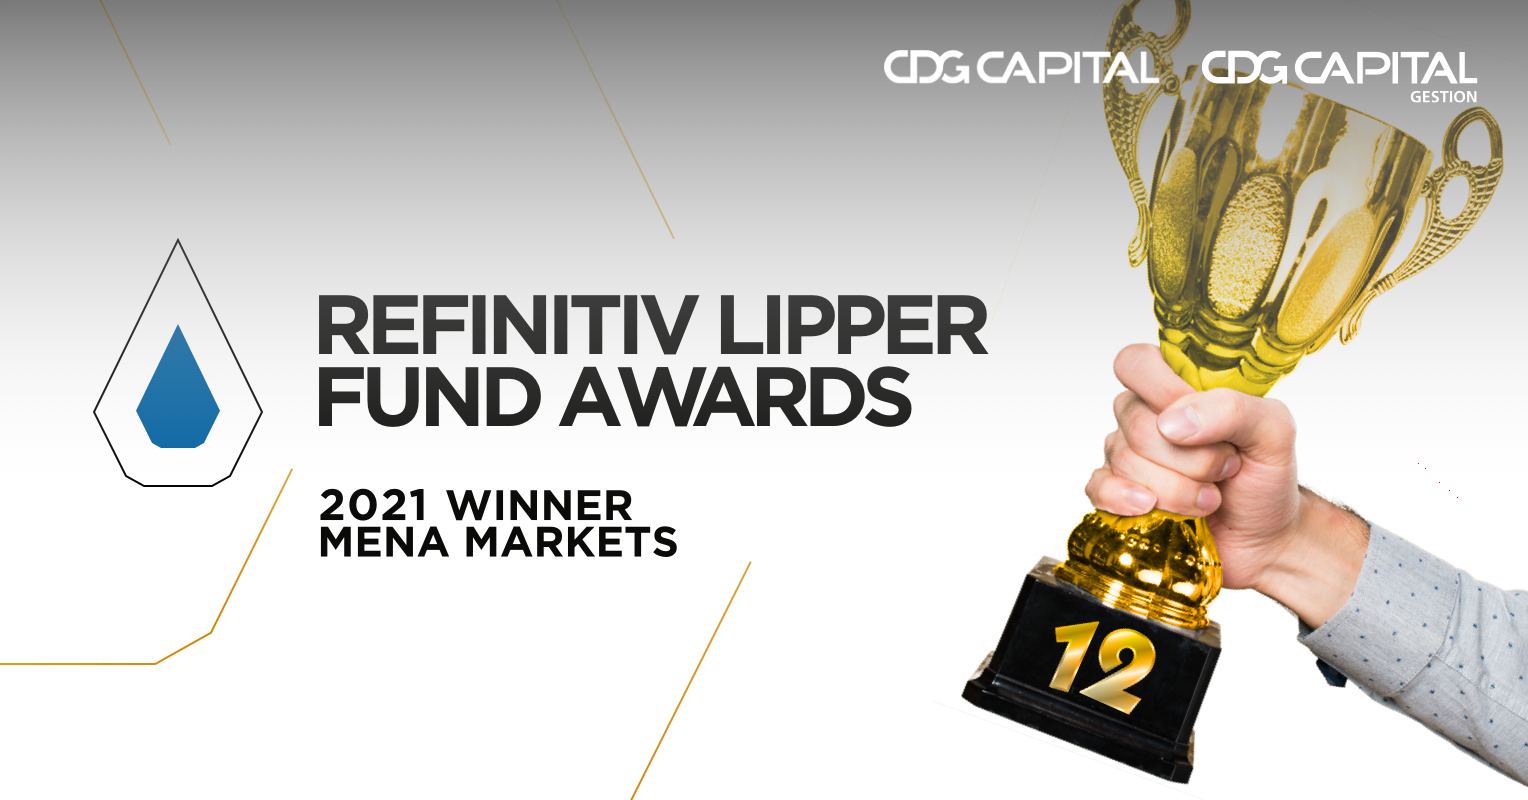 CDG Capital et CDG Capital Gestion : 12 Trophées au Lipper Fund Awards à Dubai